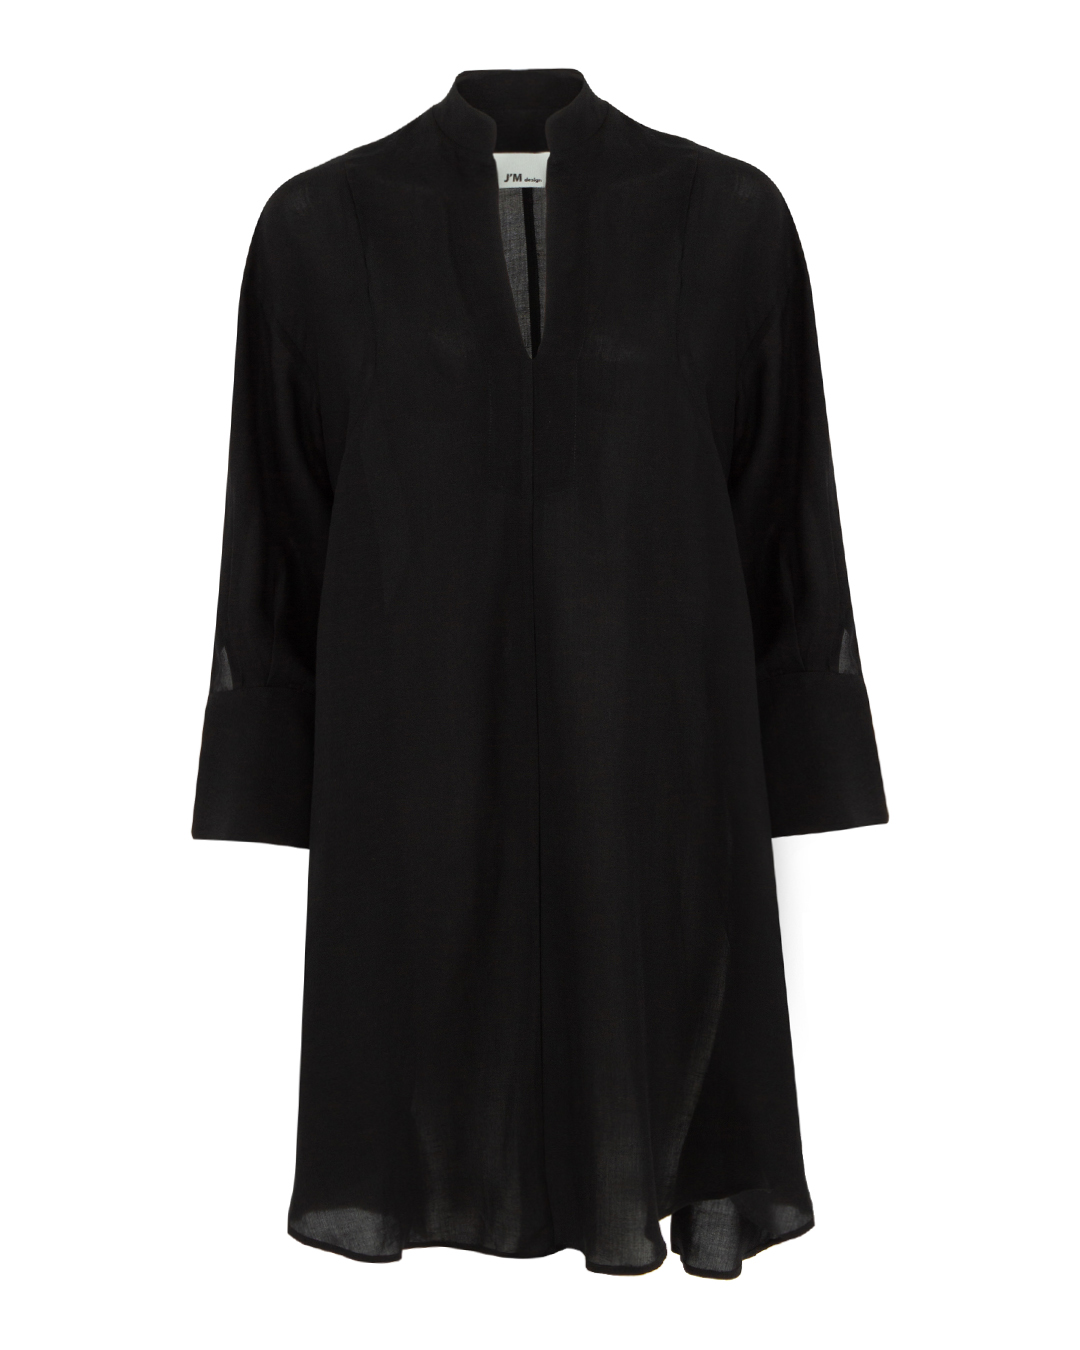 платье J.M design JM-CA206 черный xs, размер xs